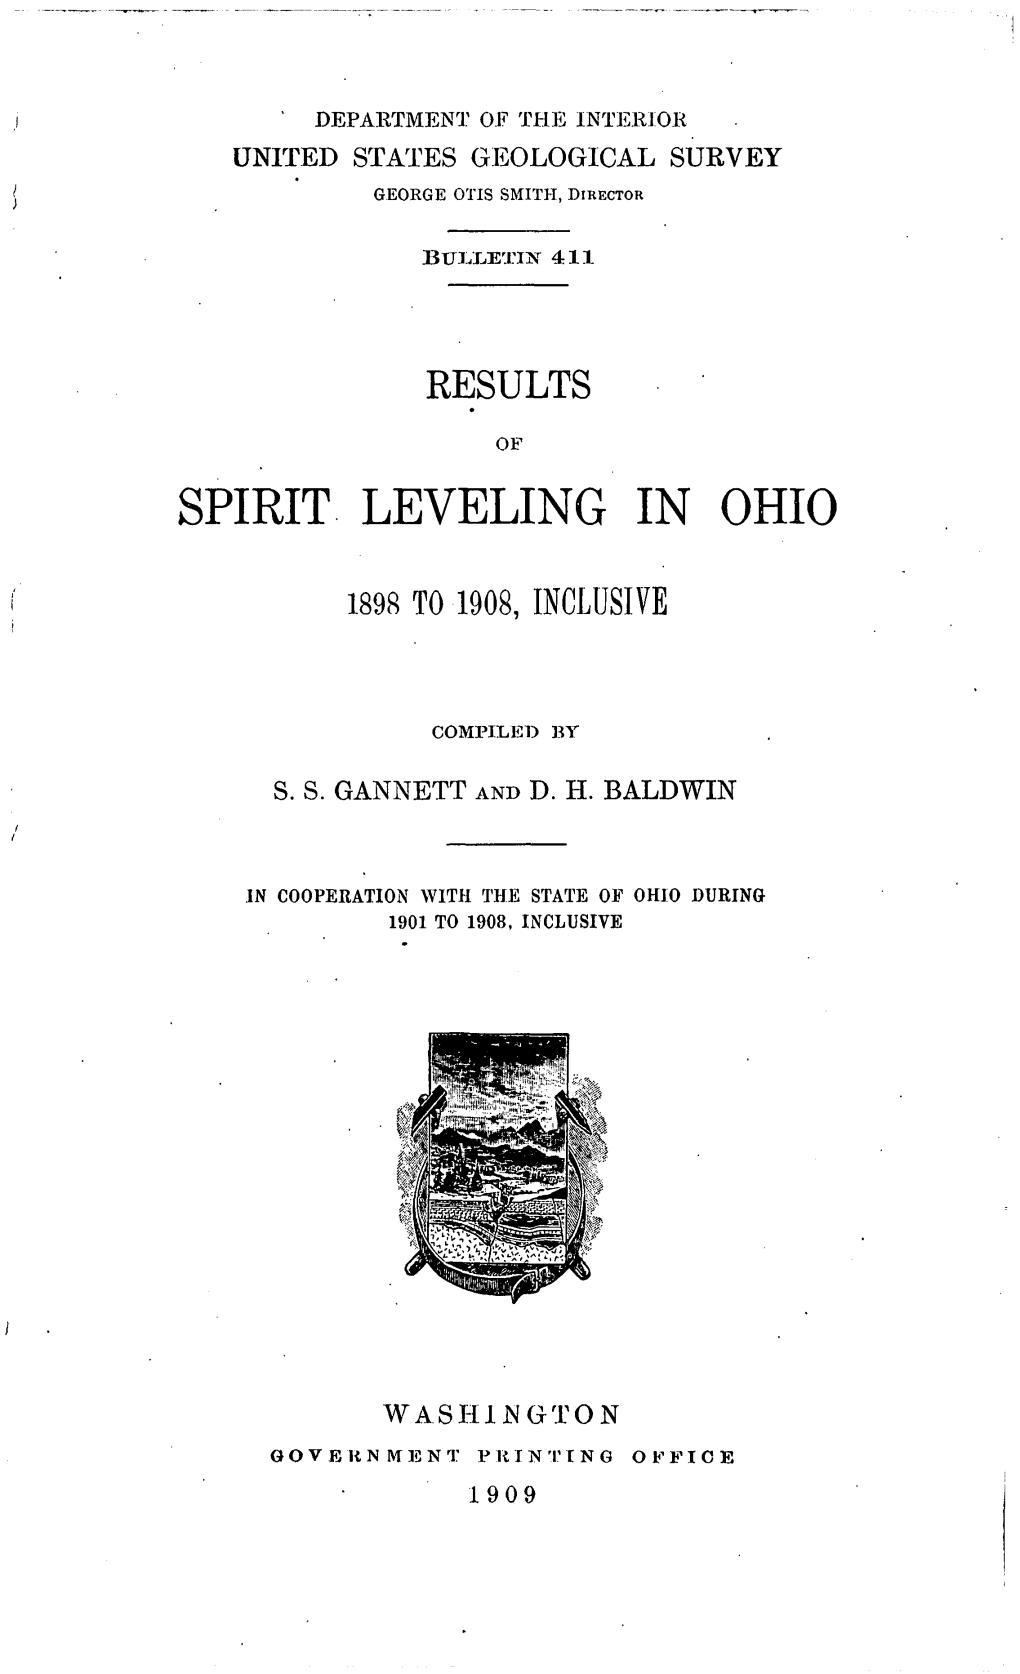 Spirit Leveling in Ohio